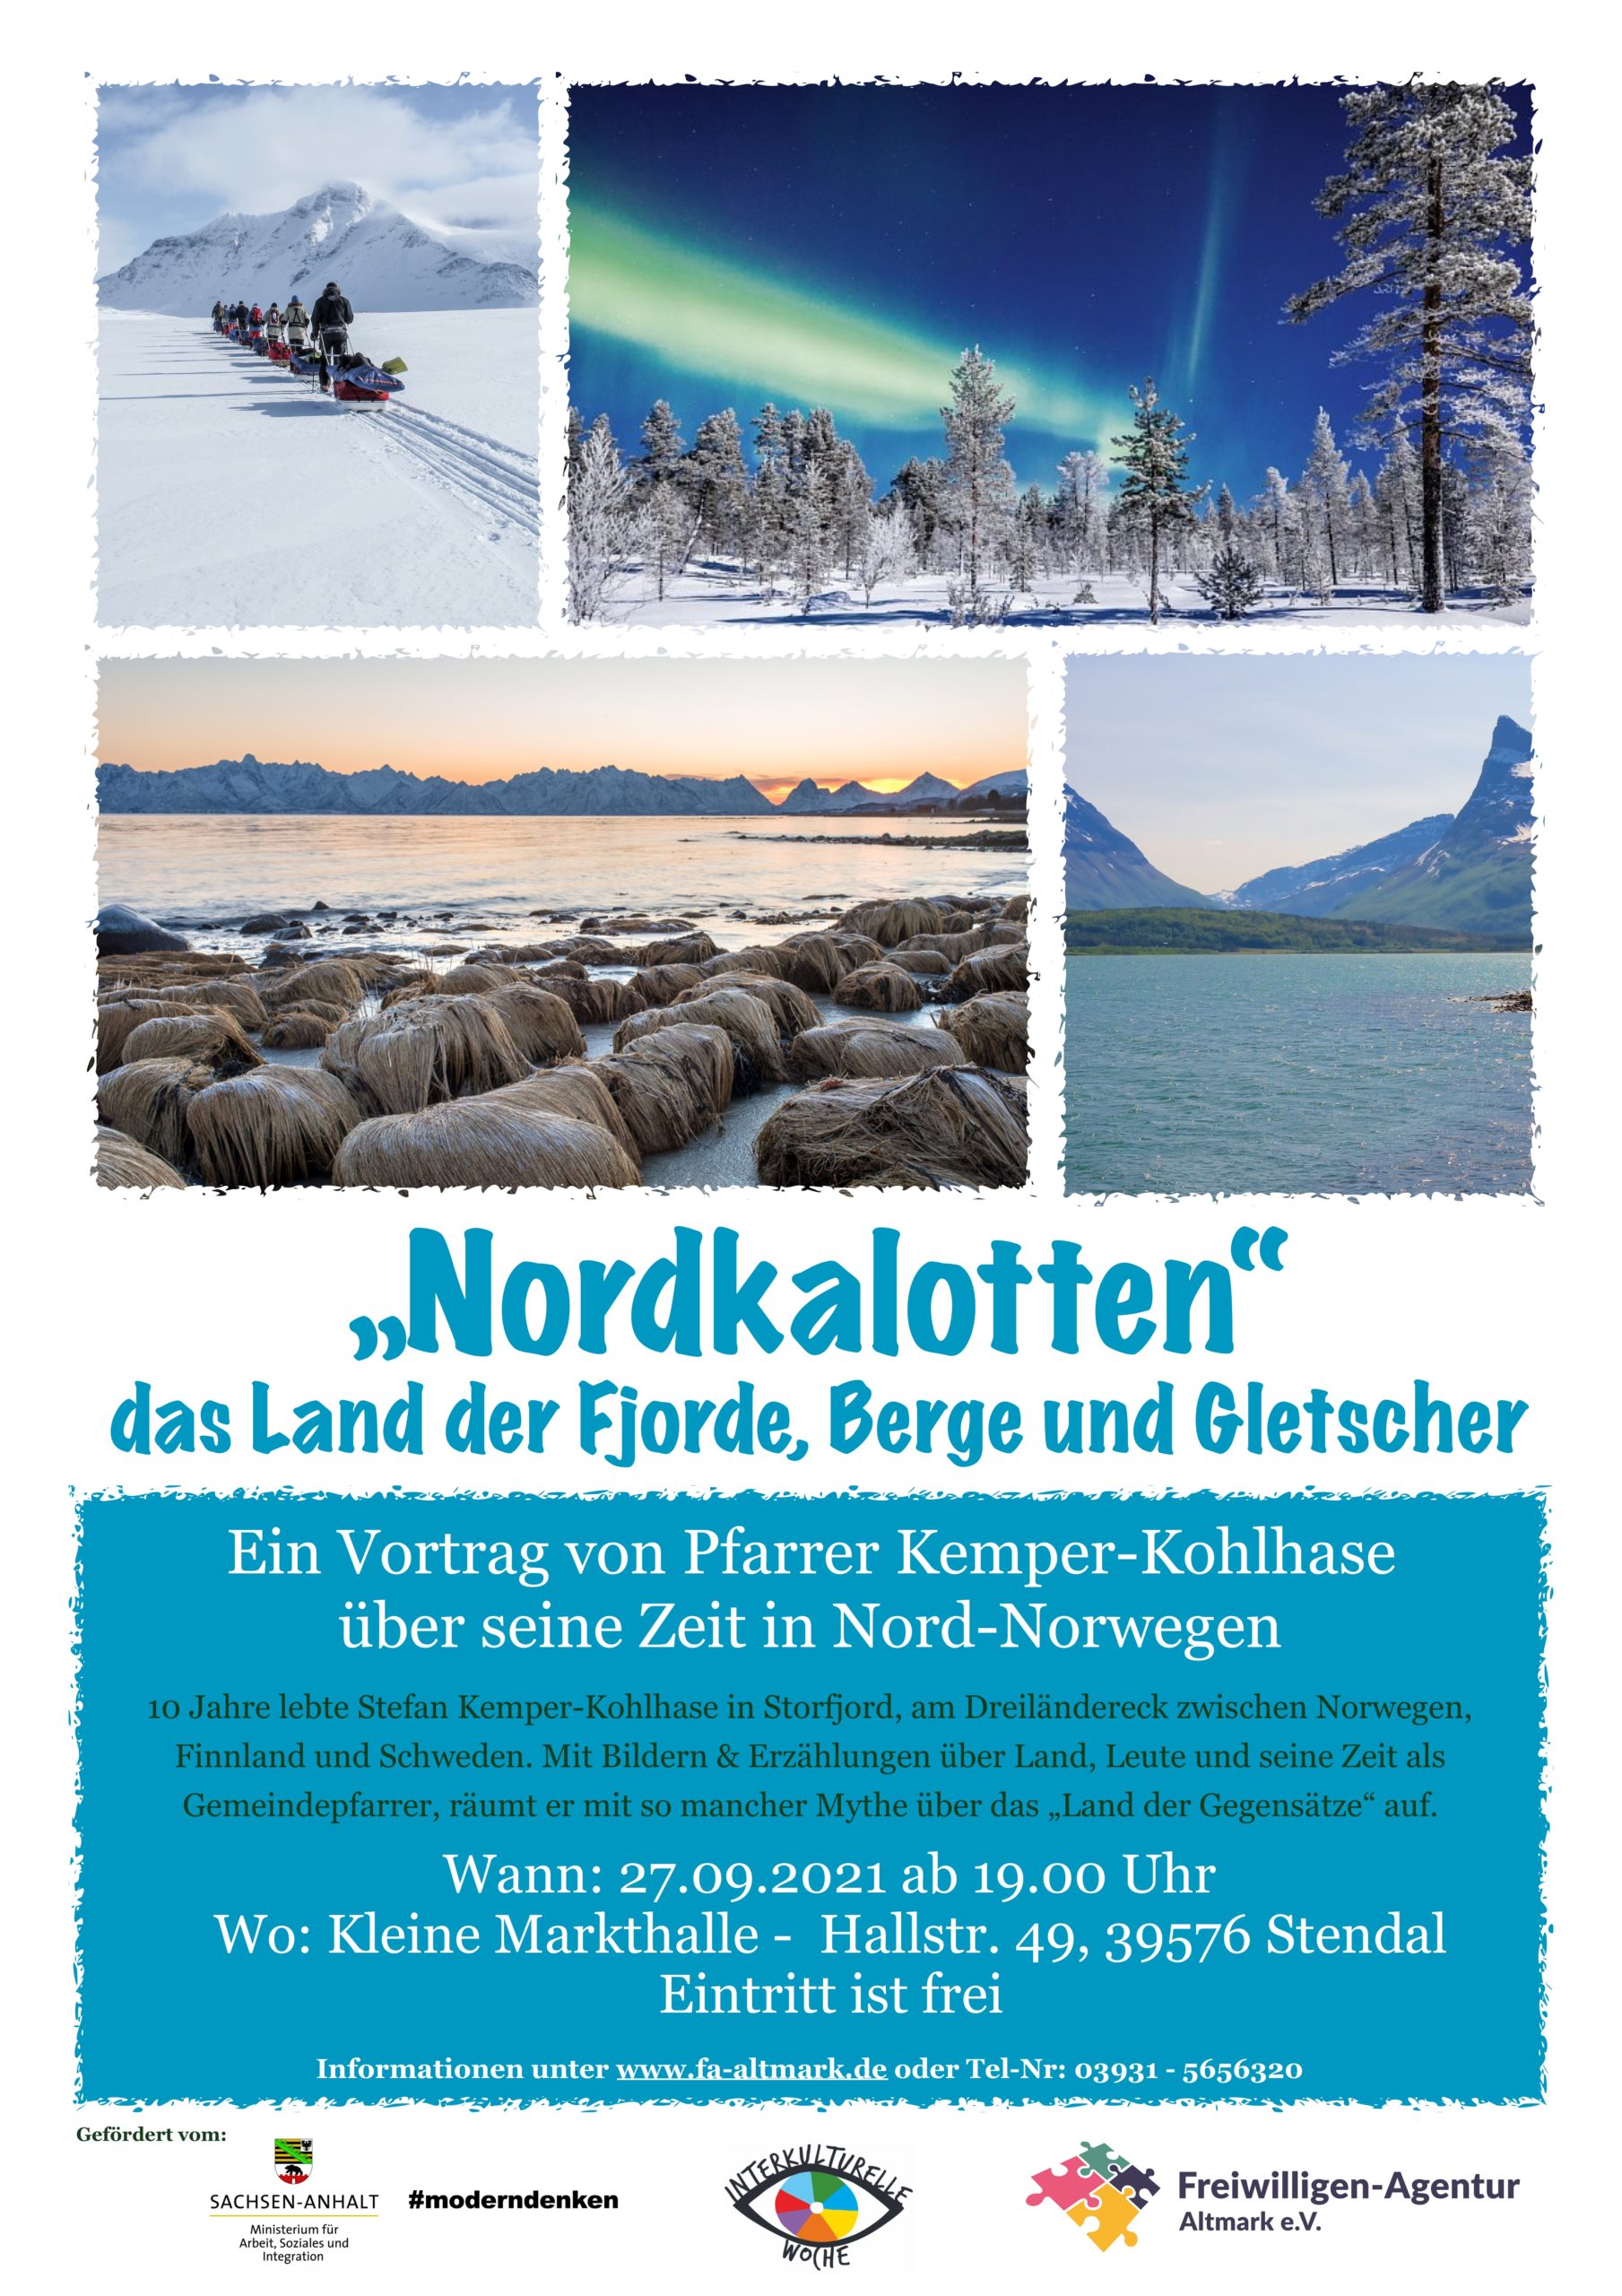 Vortrag "Nordkalotten - das Land der Fjorde, Berge und Gletscher"